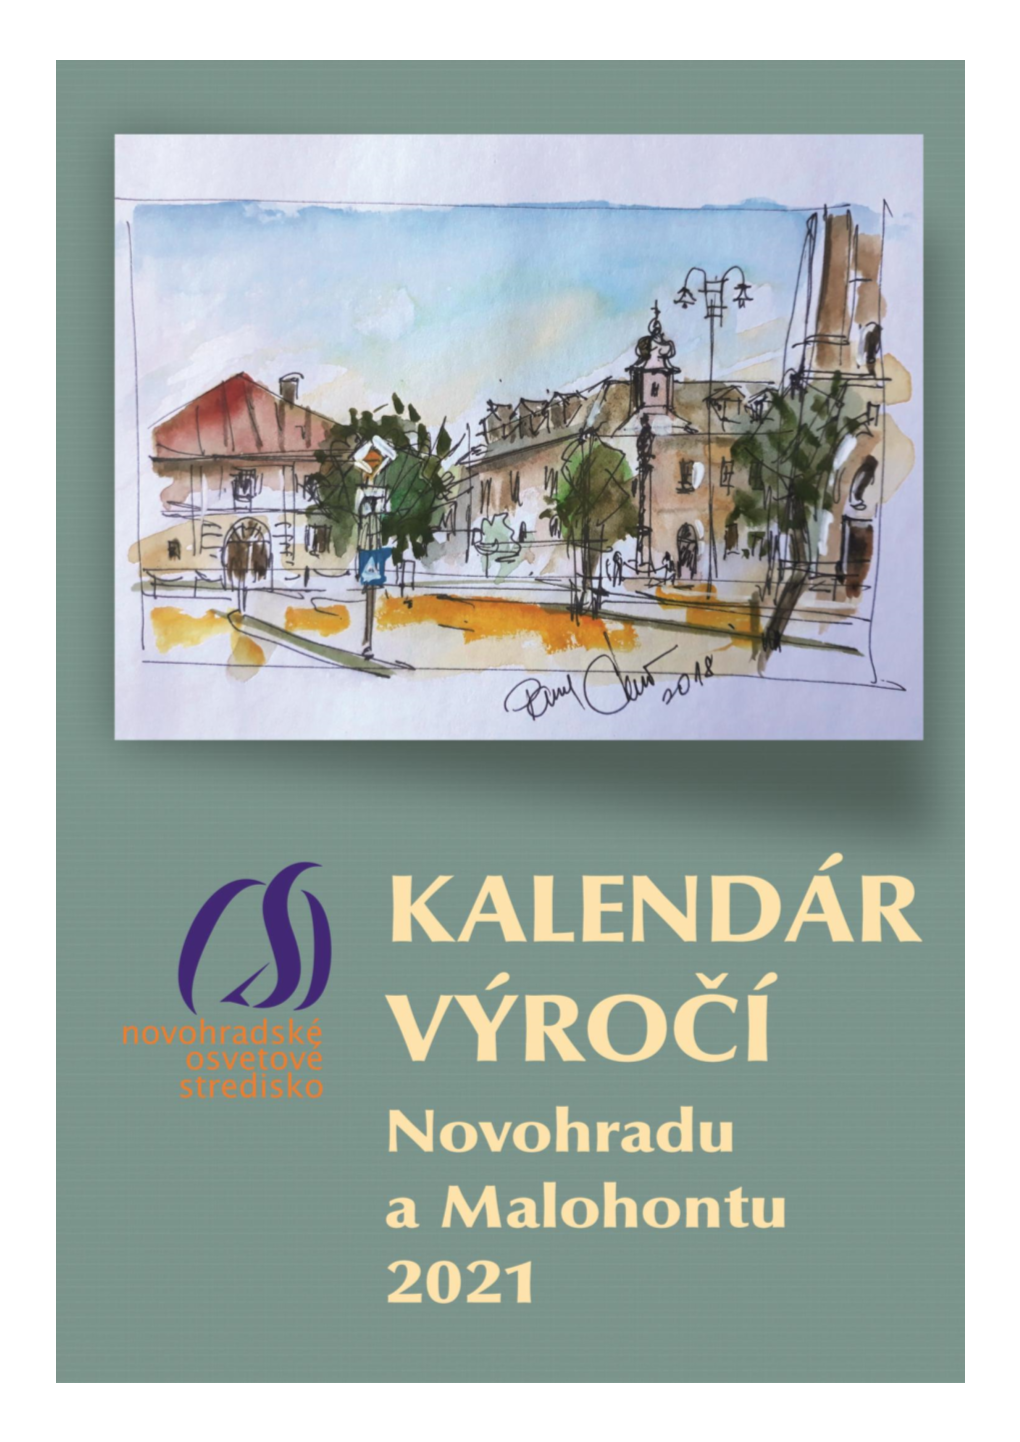 Kalendár Výročí Novohradu a Malohontu 2021